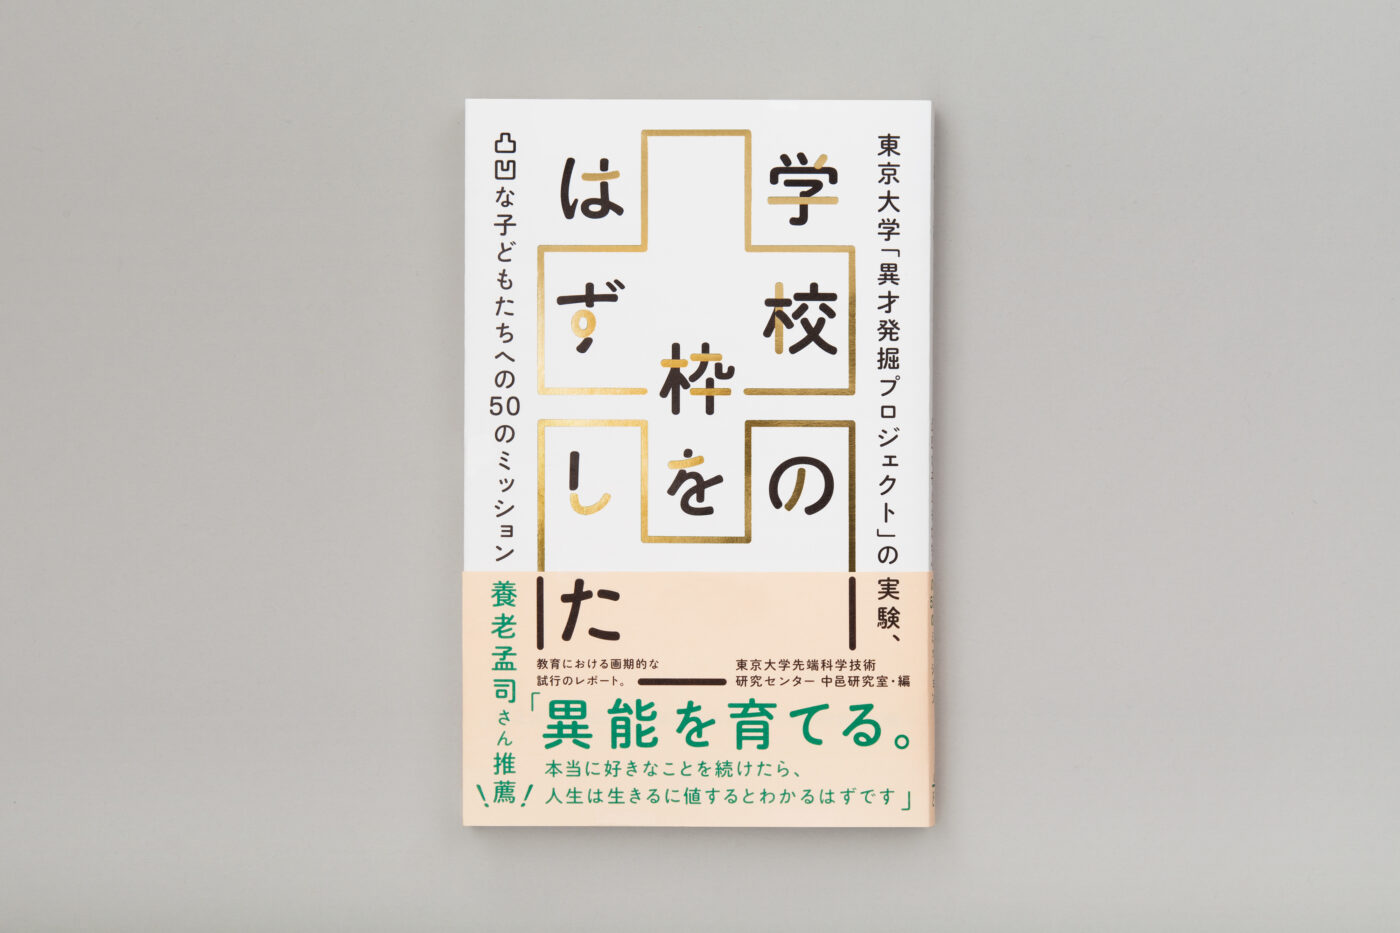 2021年2月に誕生した大阪の出版社・どく社の第1弾書籍 『学校の枠をはずしたー東京大学「異才発掘プロジェクト」の実験、 凸凹な子どもたちへの50のミッション』が発売開始。